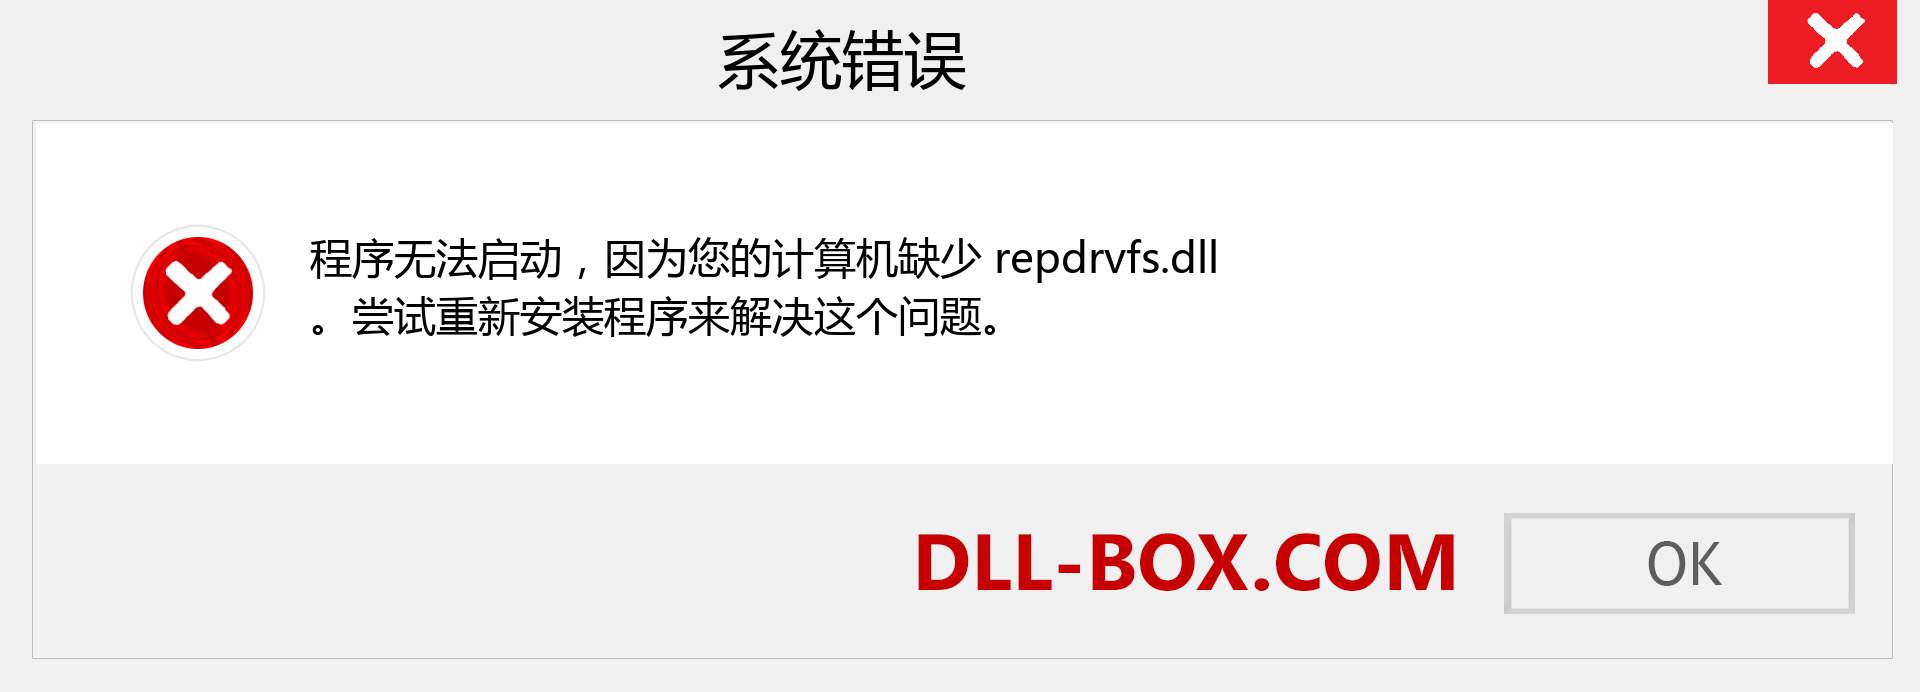 repdrvfs.dll 文件丢失？。 适用于 Windows 7、8、10 的下载 - 修复 Windows、照片、图像上的 repdrvfs dll 丢失错误